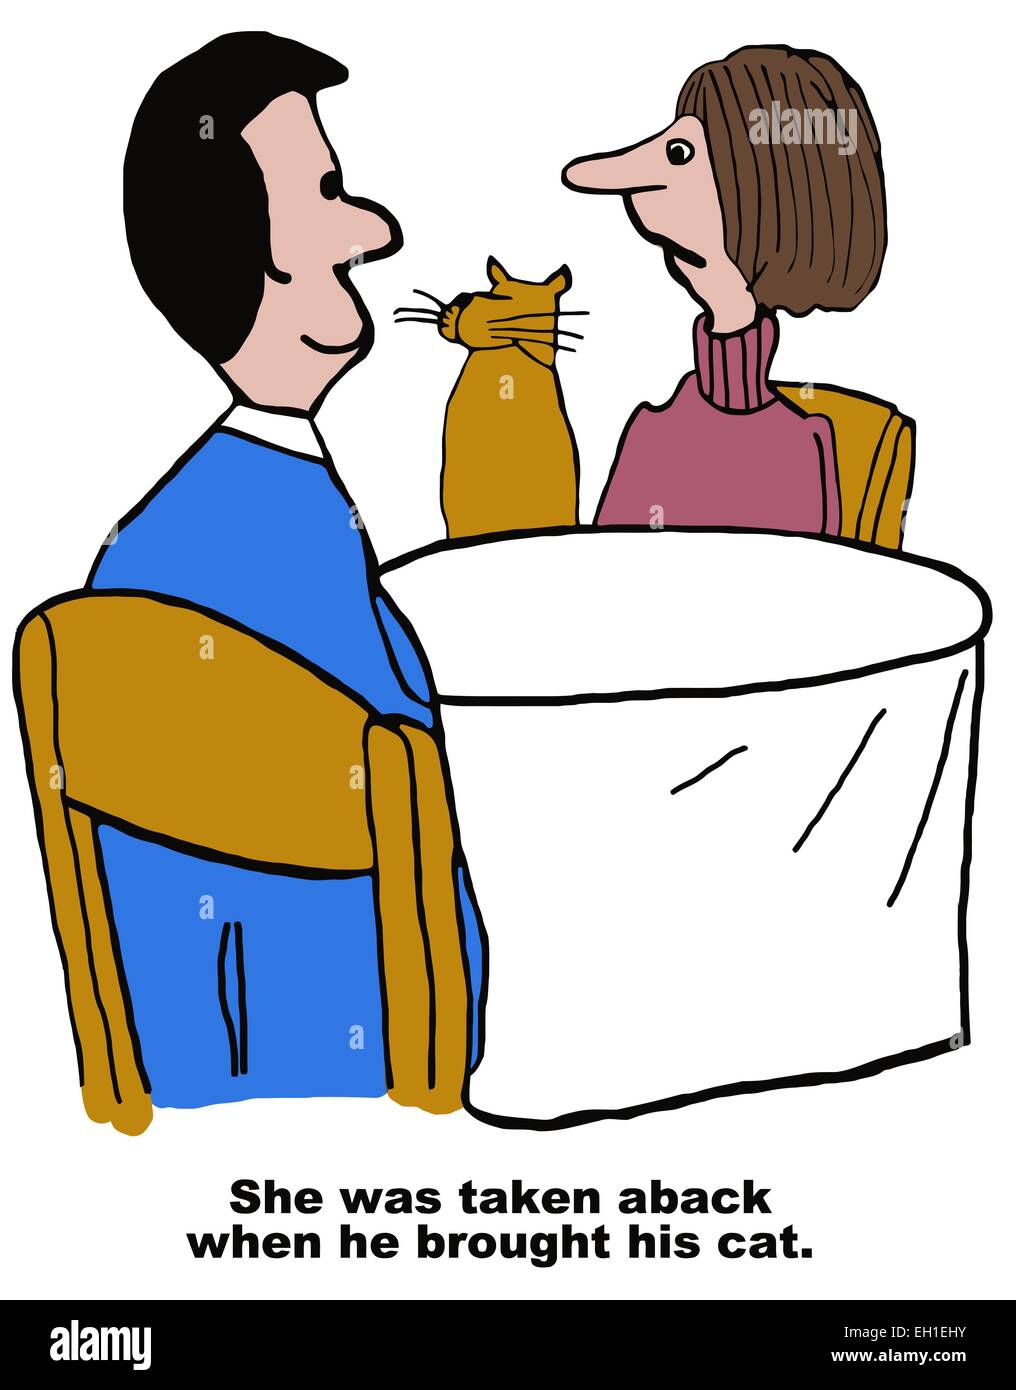 Caricature de couple sur le premier jour avec un chat, il a été surpris quand il a présenté son chat. Illustration de Vecteur